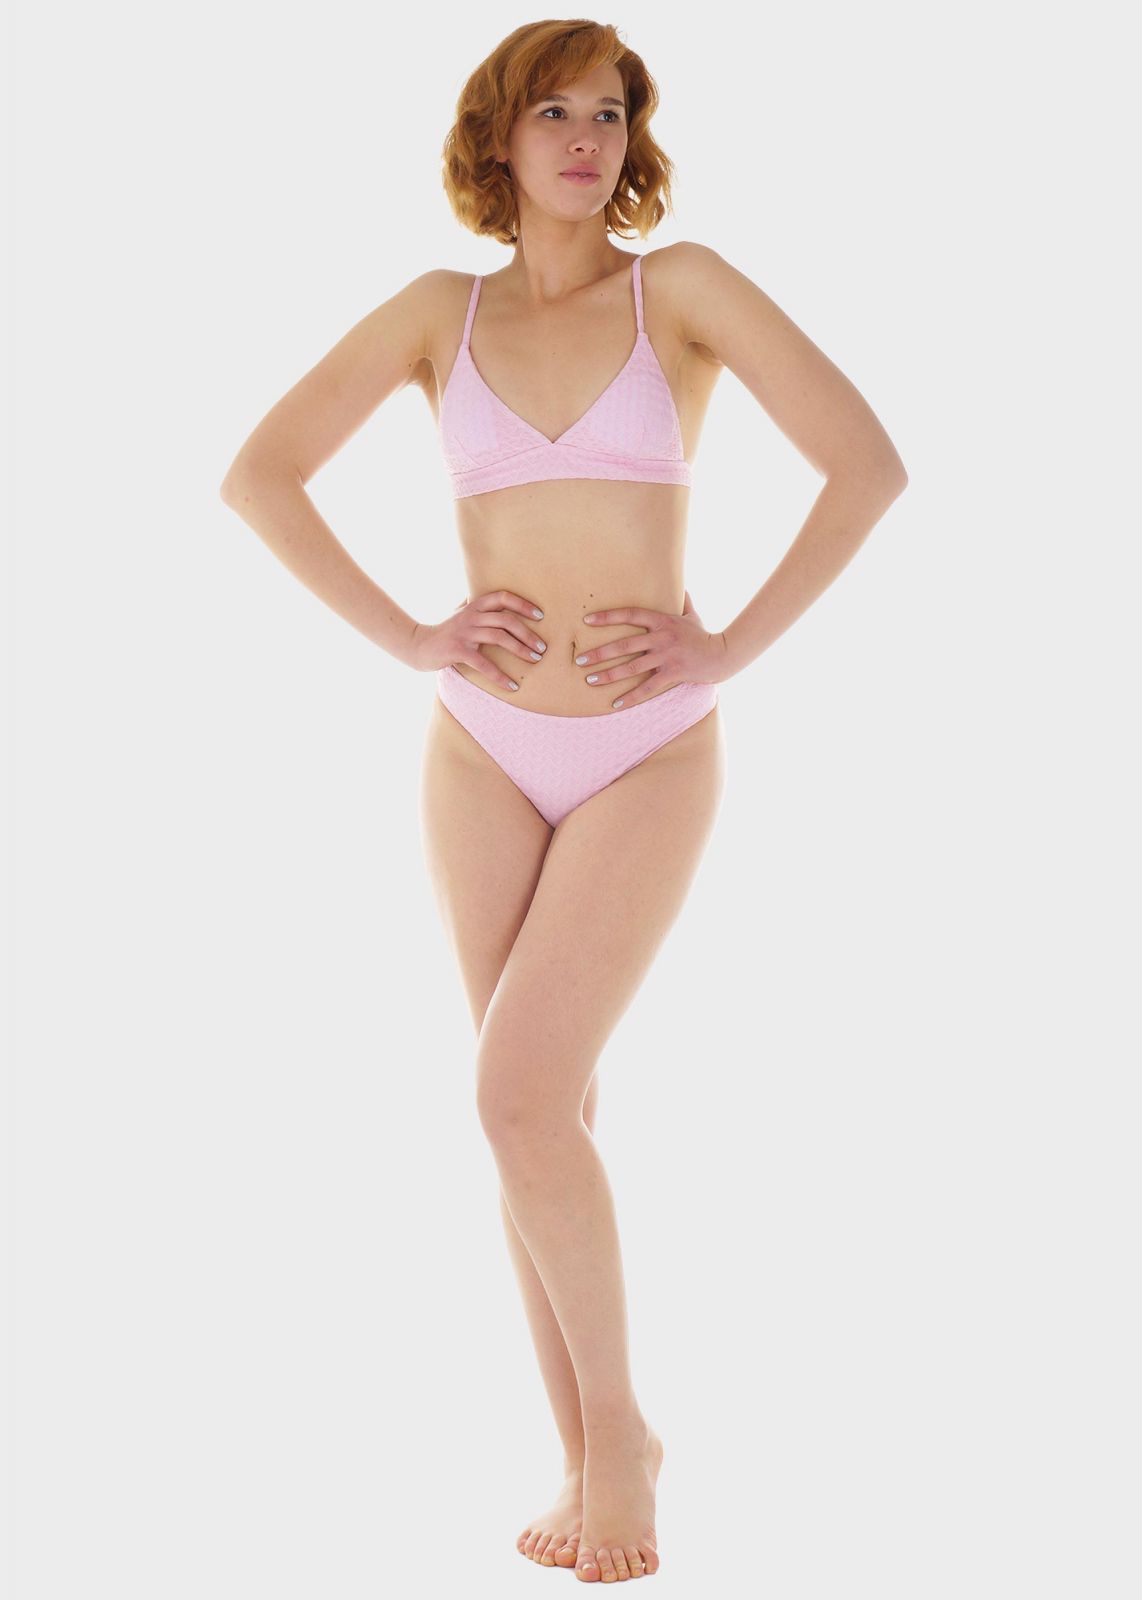 Γυναικείο σετ μαγιό bikini μονόχρωμο αποσπώμενη επένδυση slip κανονική γραμμή.Καλύπτει B Cup ΡΟΖ